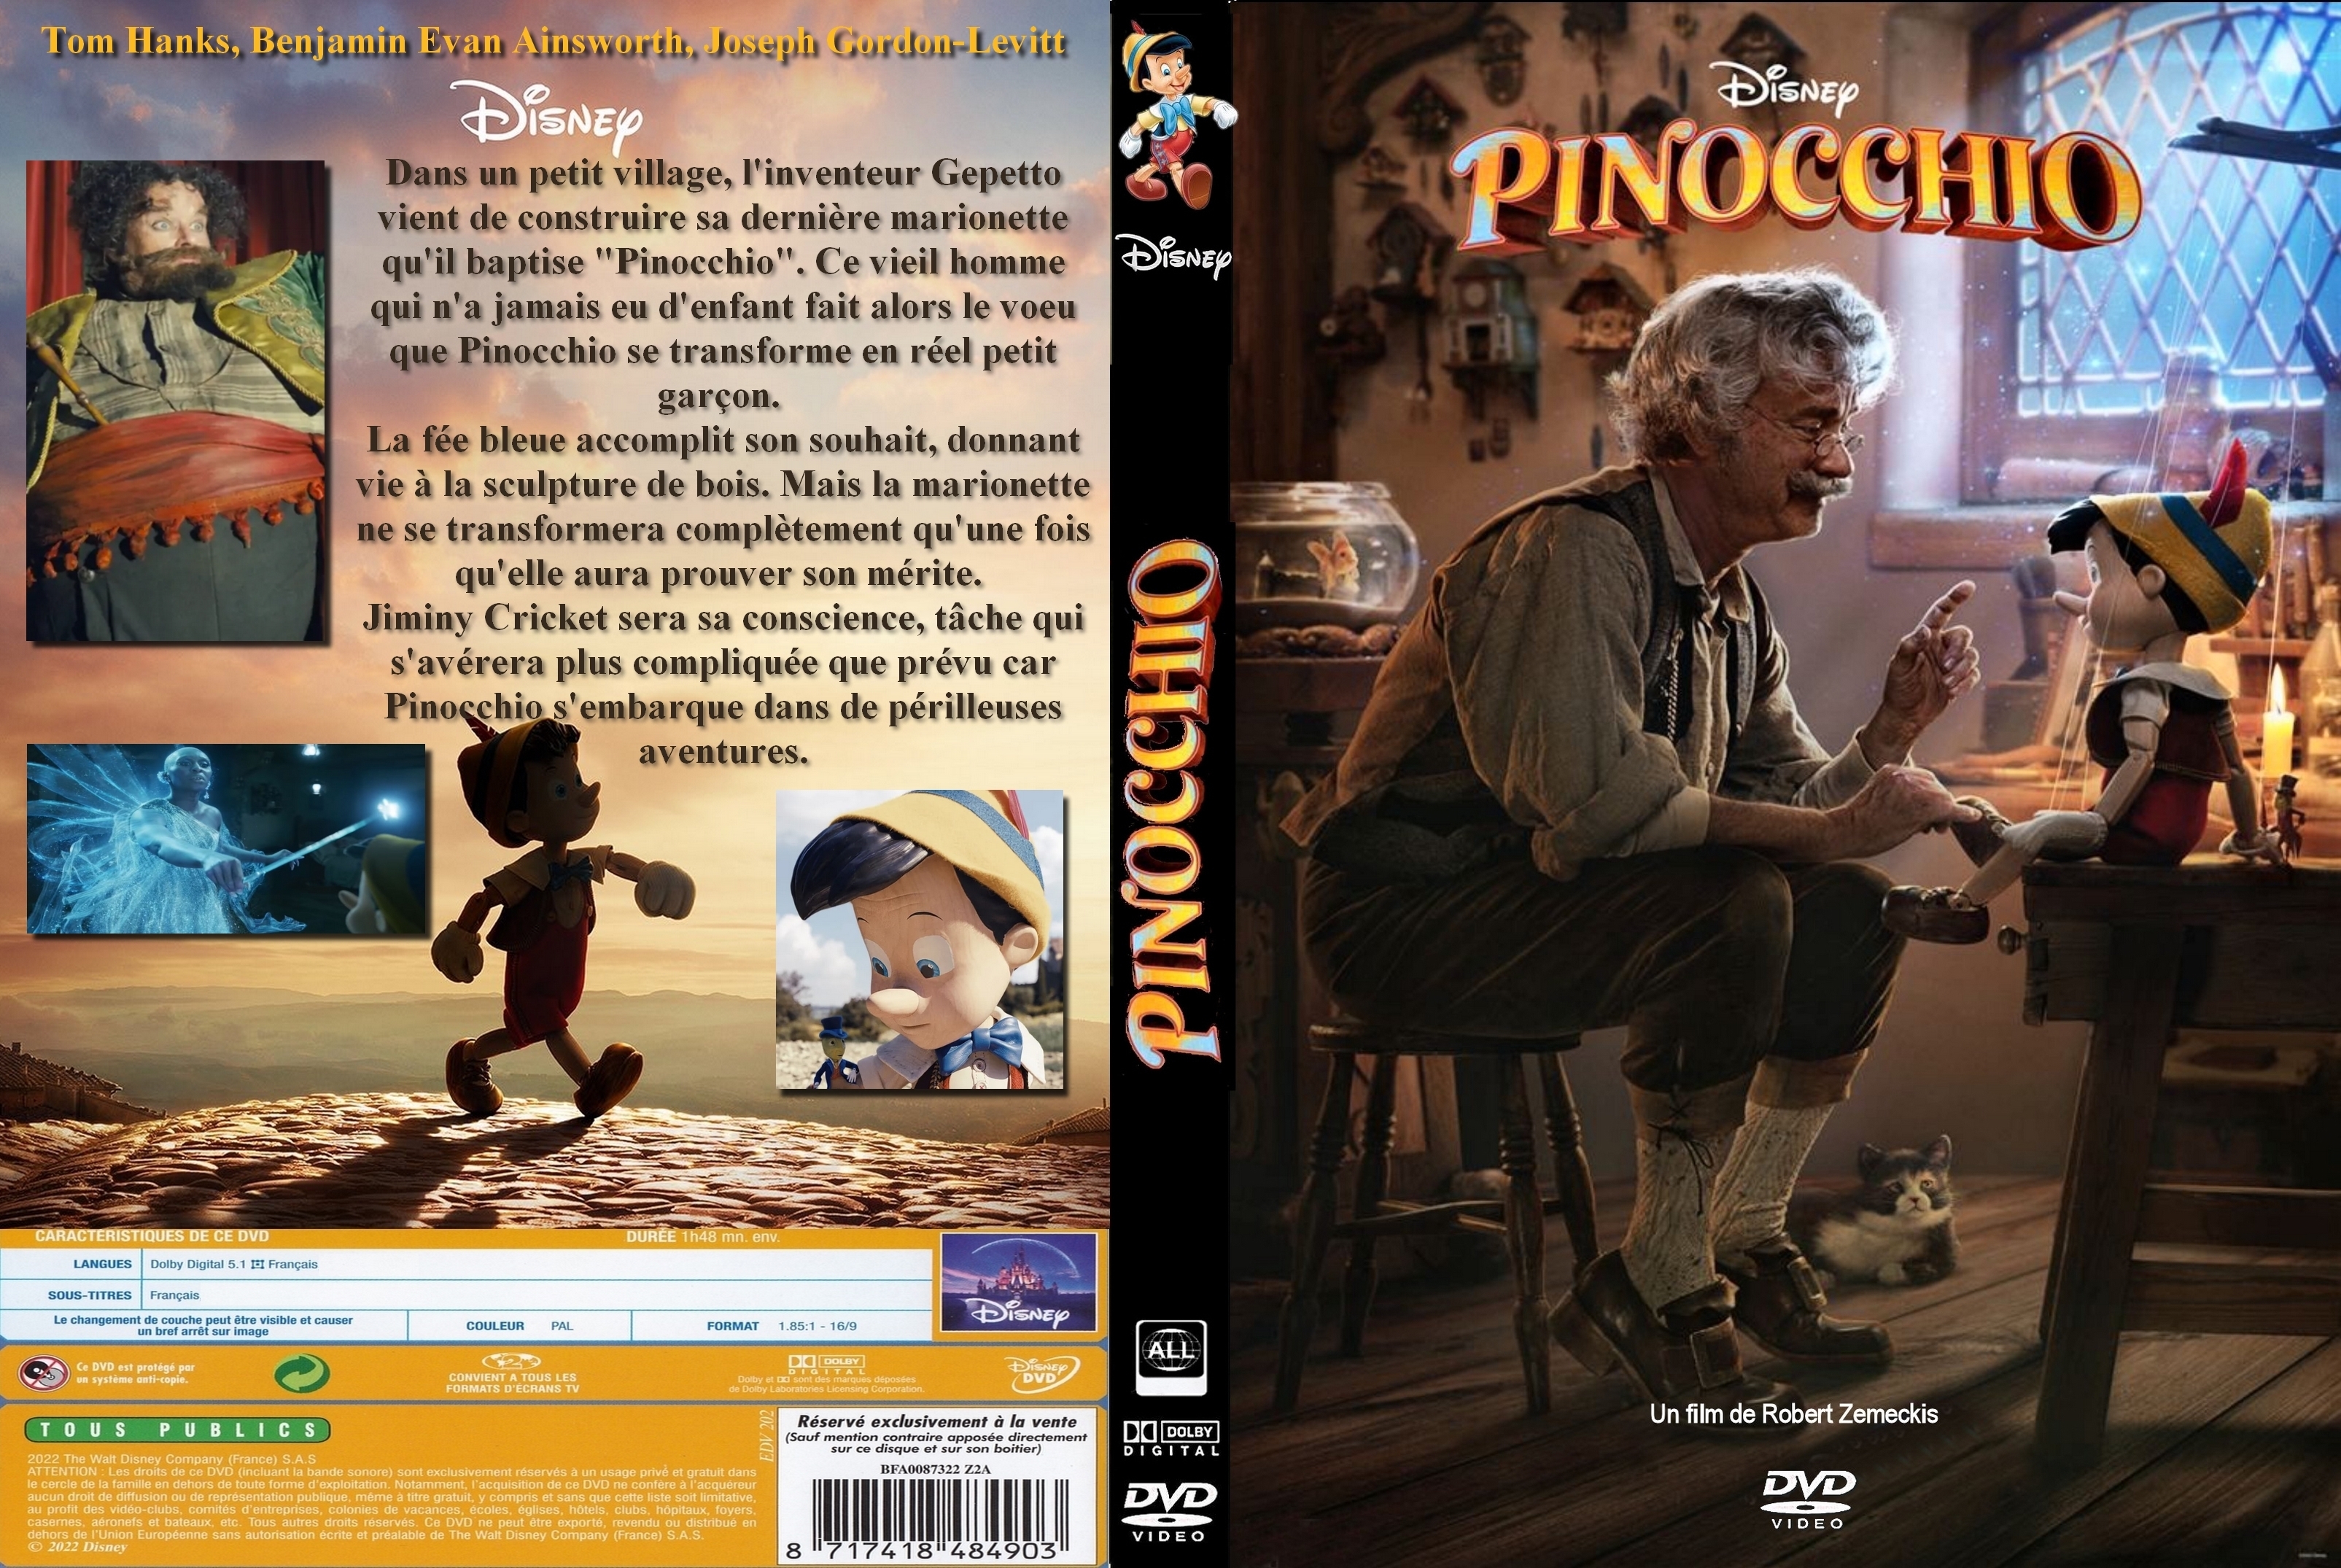 Jaquette DVD Pinocchio (2022) custom v2